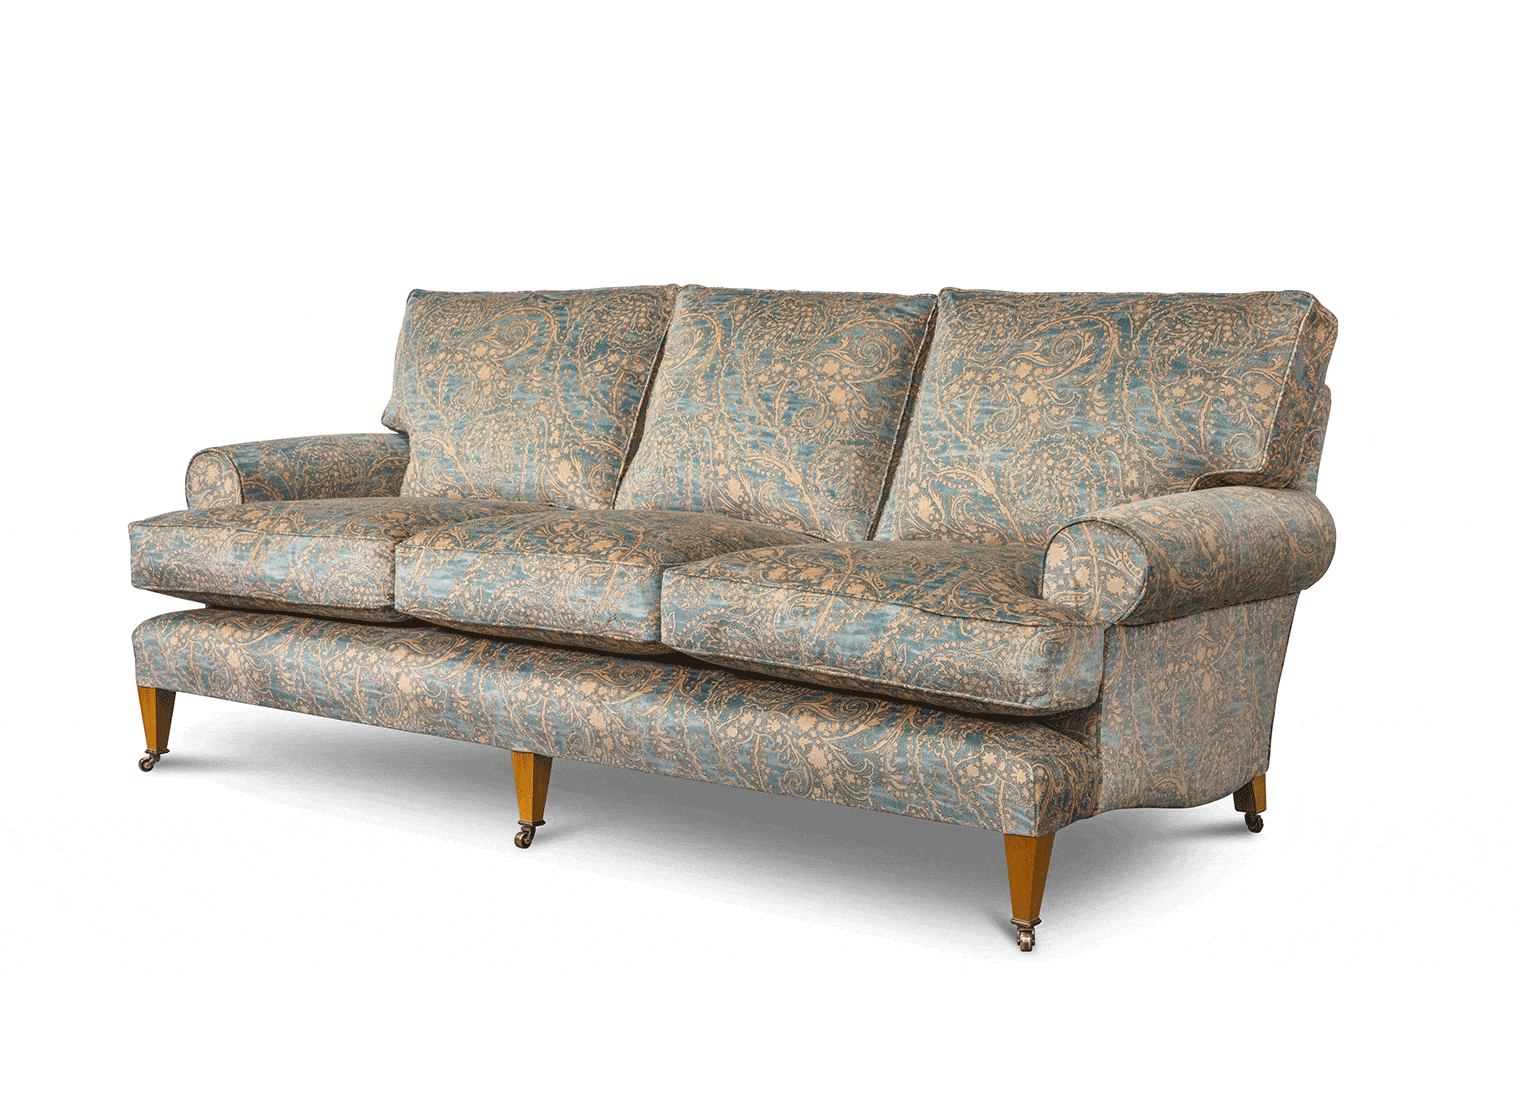 Marlborough 3 seater sofa in Balthazar - Azure - Beaumont & Fletcher